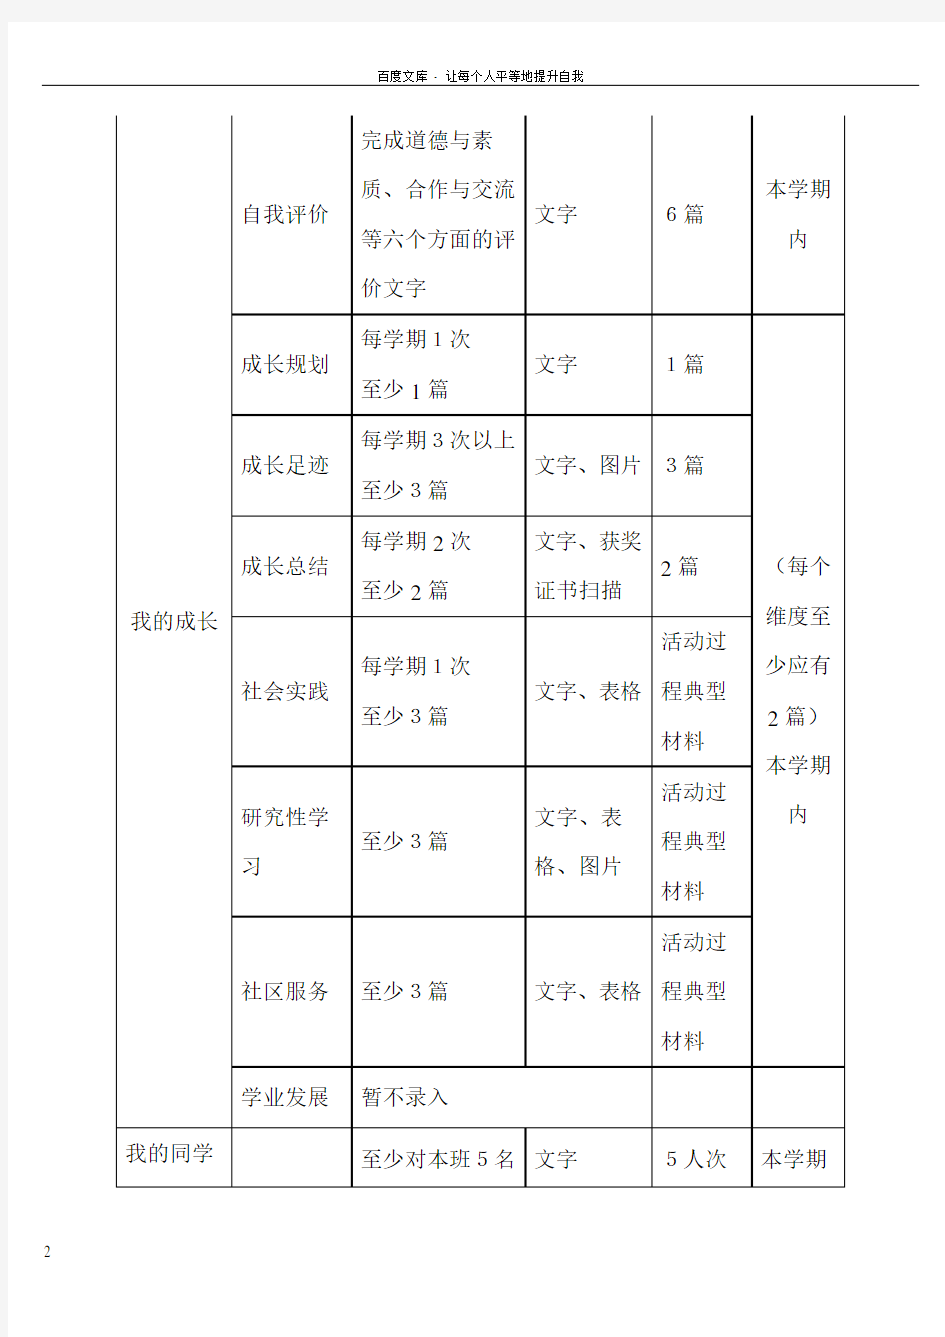 重庆市普通高中生综合素质评价系统学生填